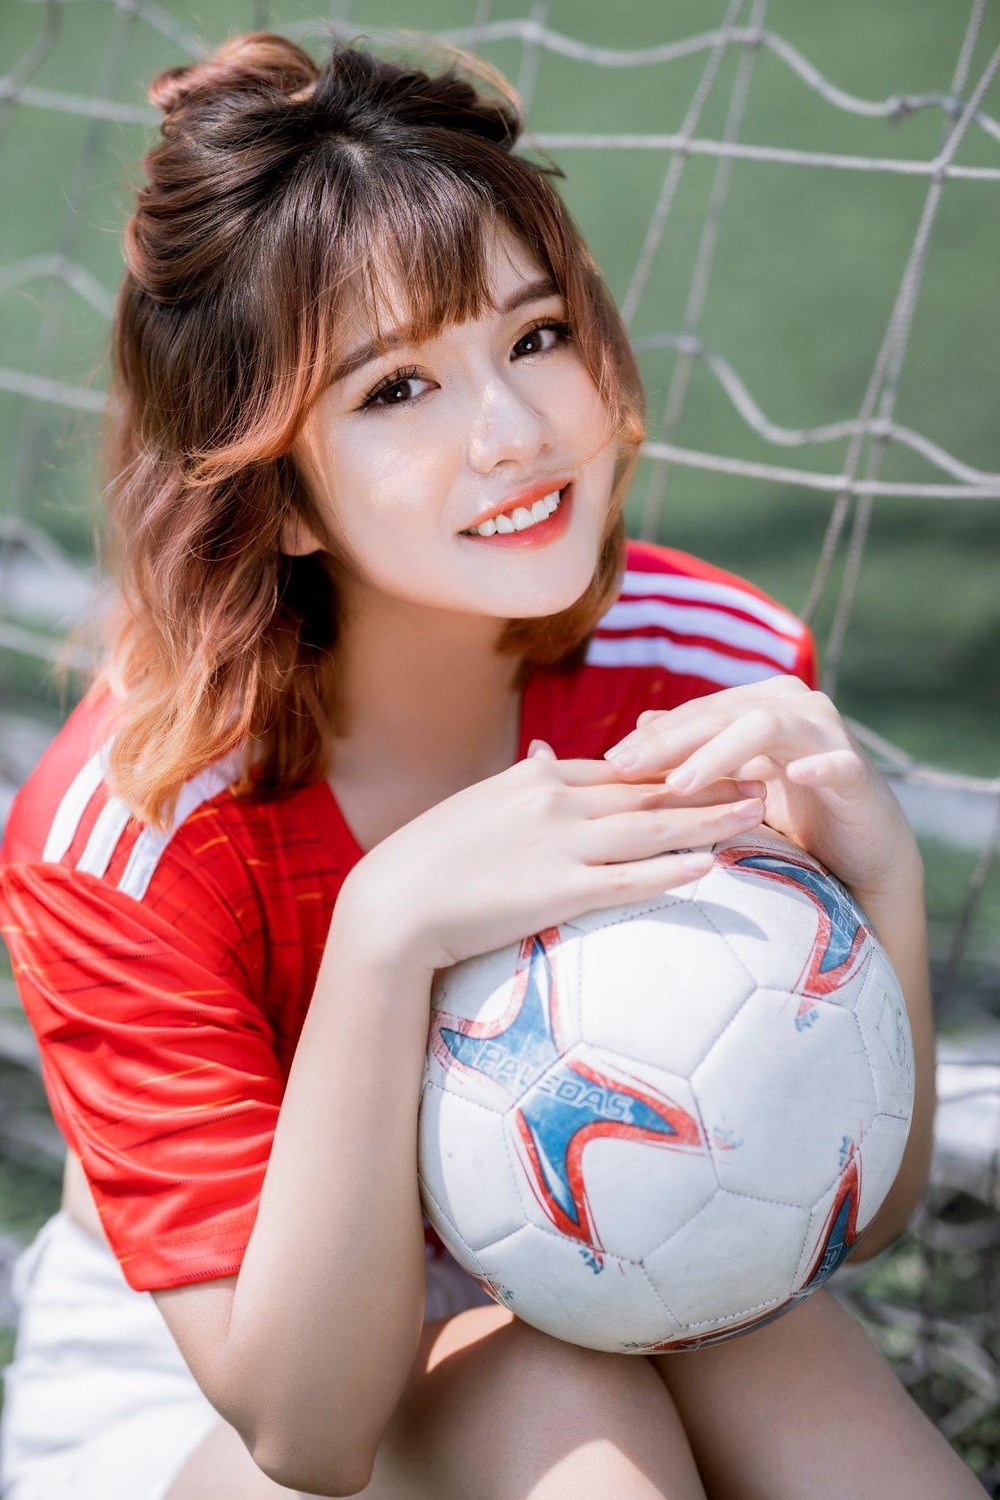 Hoa khôi Thể thao Khánh Huyền khoe nhan sắc xinh đẹp tuổi 24 - Ảnh 1.